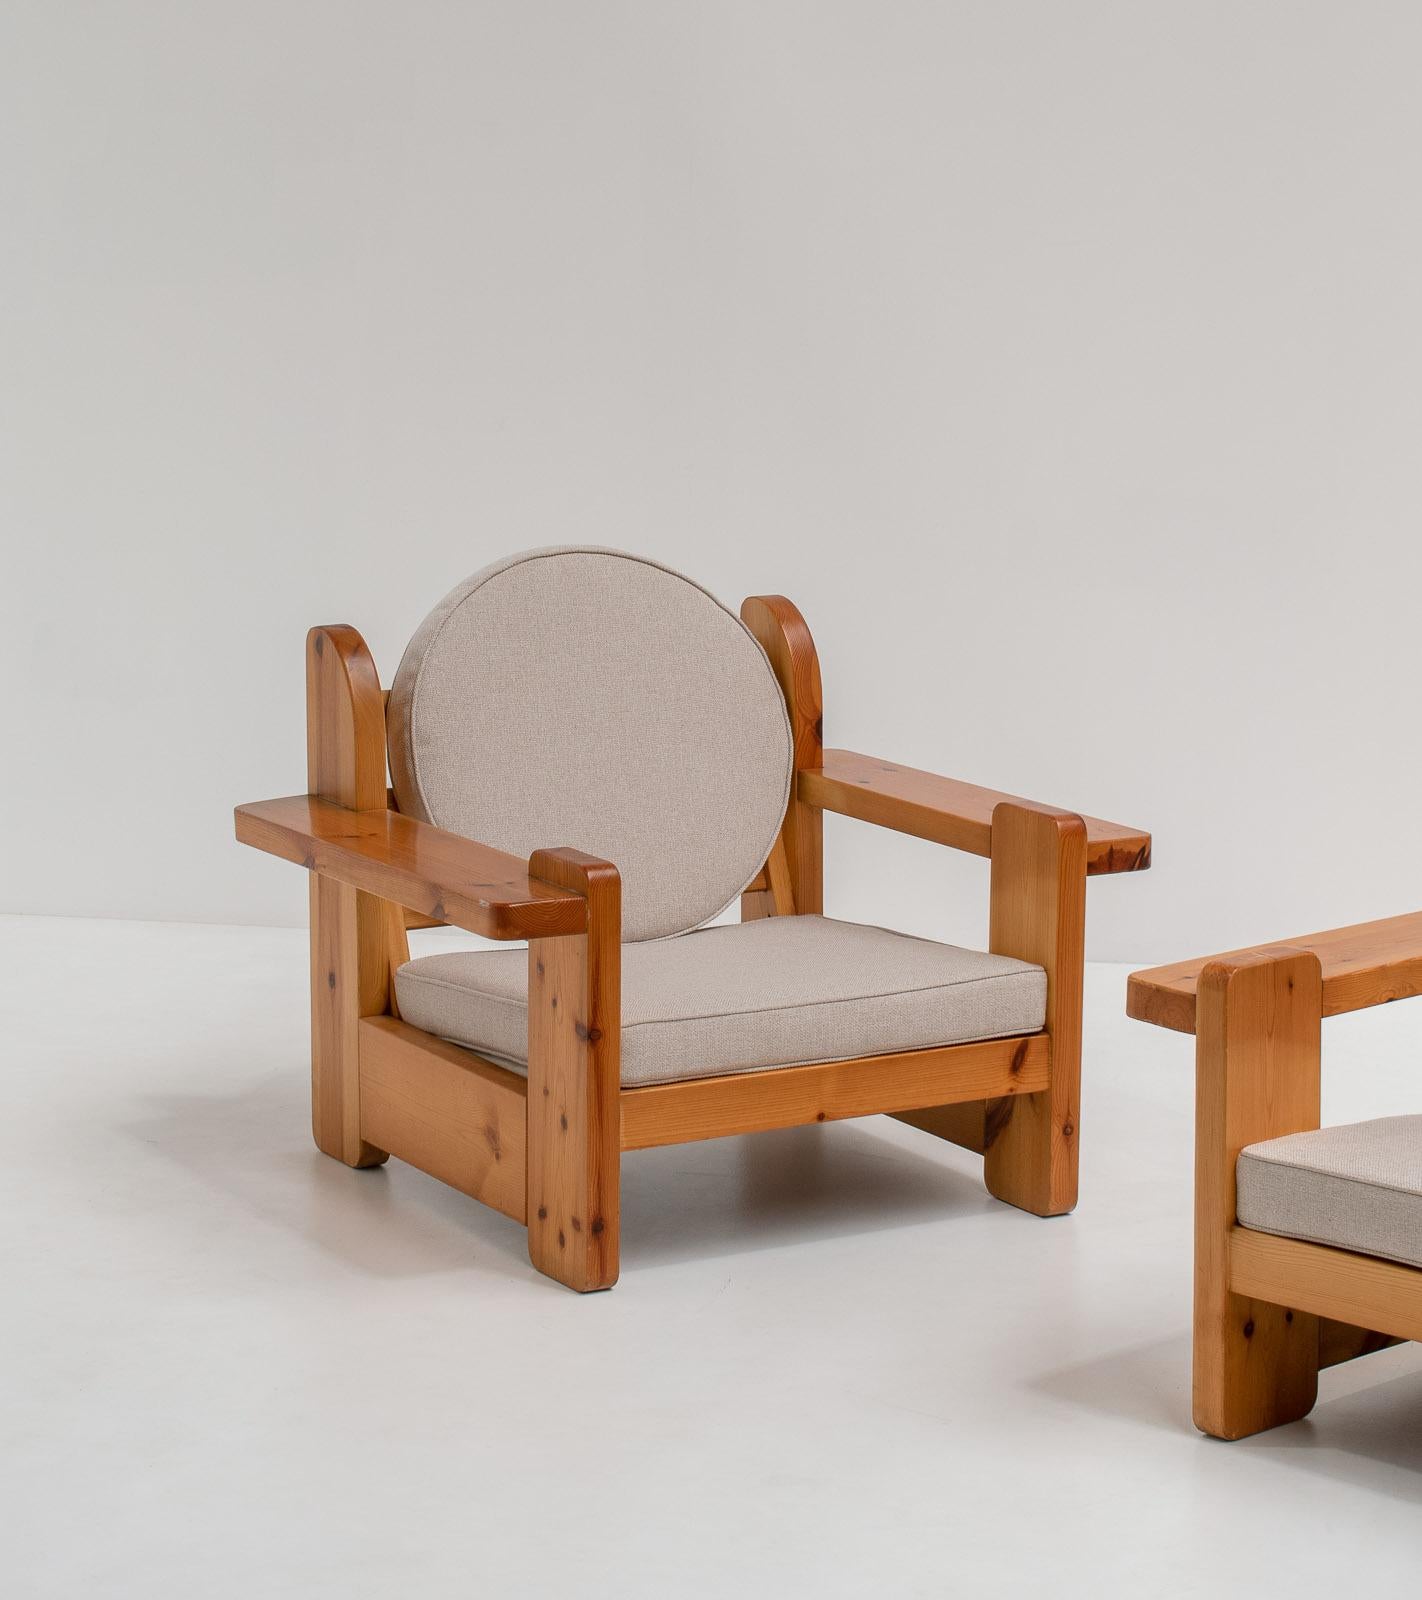 Une paire étonnante et rare de chaises de salon sculpturales. Fabriqué en bois de pin massif. Depuis les années 1970.

Ces magnifiques chaises massives sont une véritable pièce d'apparat. Le cadre en bois massif est constitué de quelques grandes